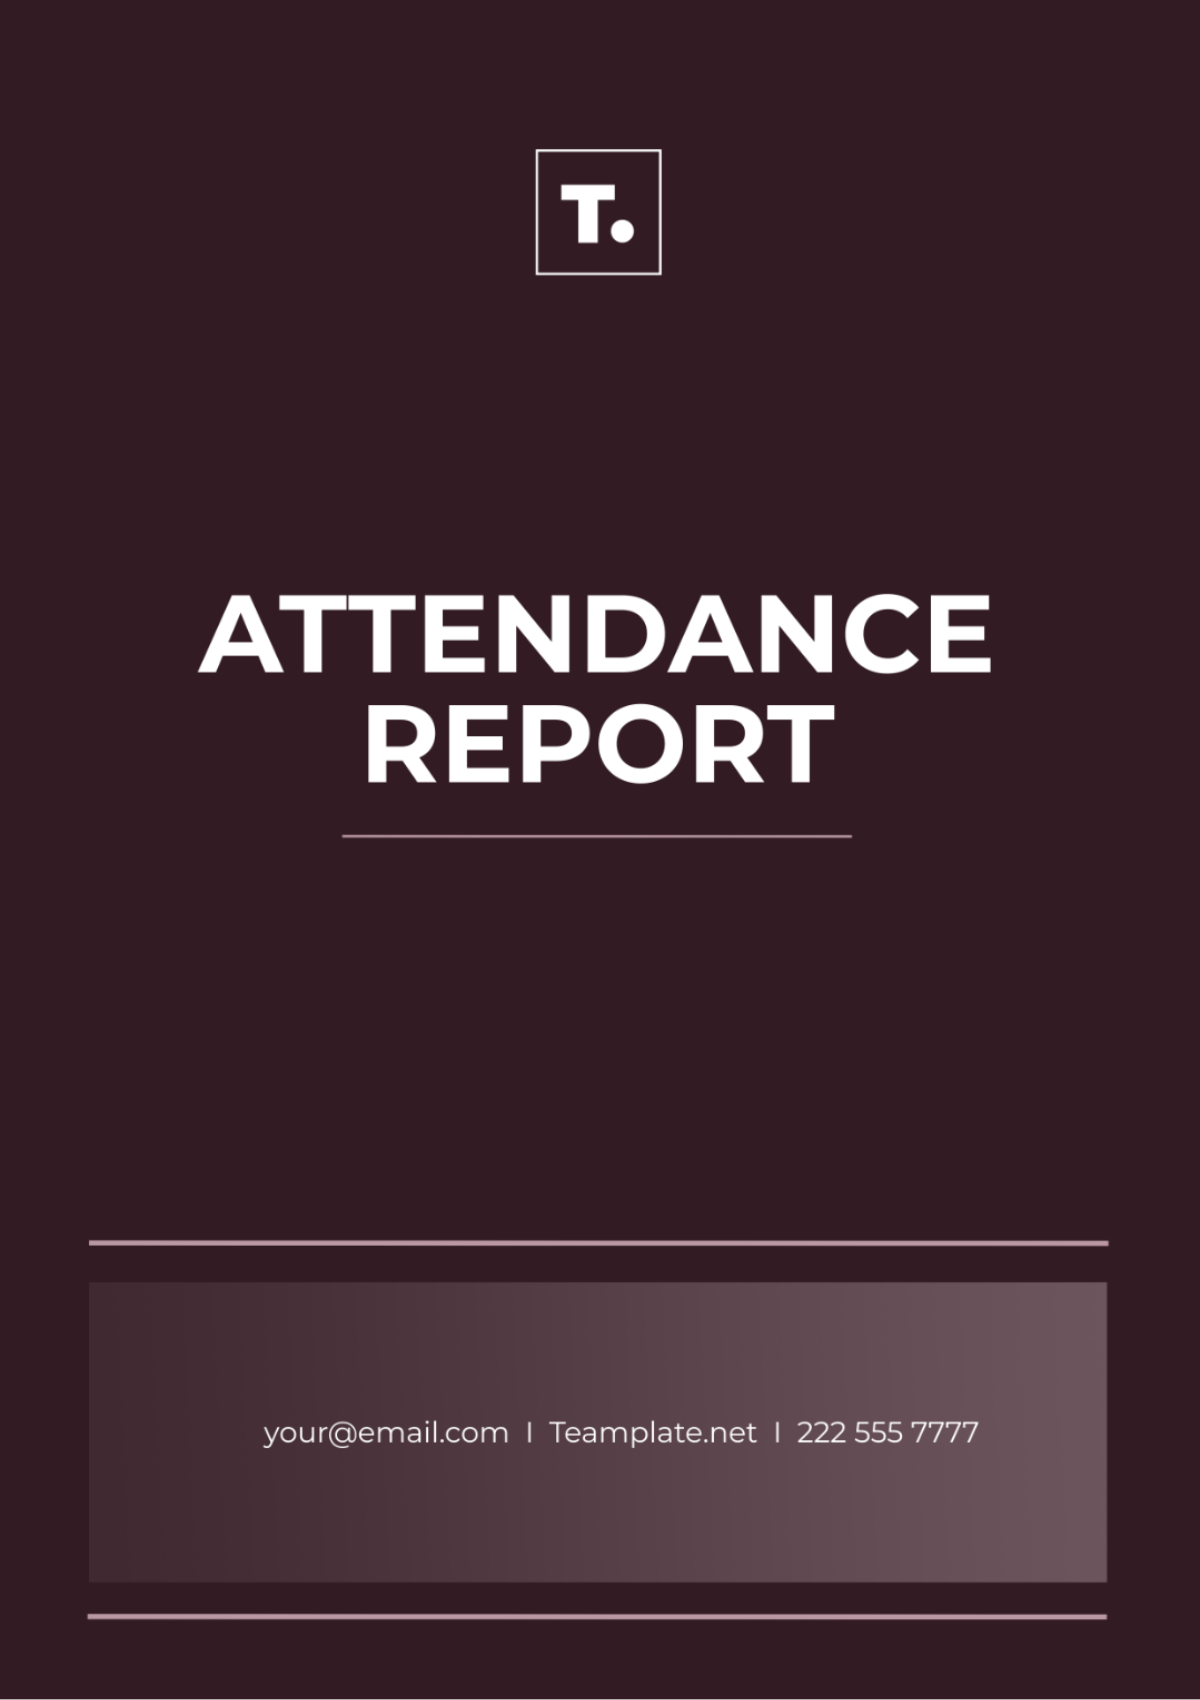 Attendance Report Template